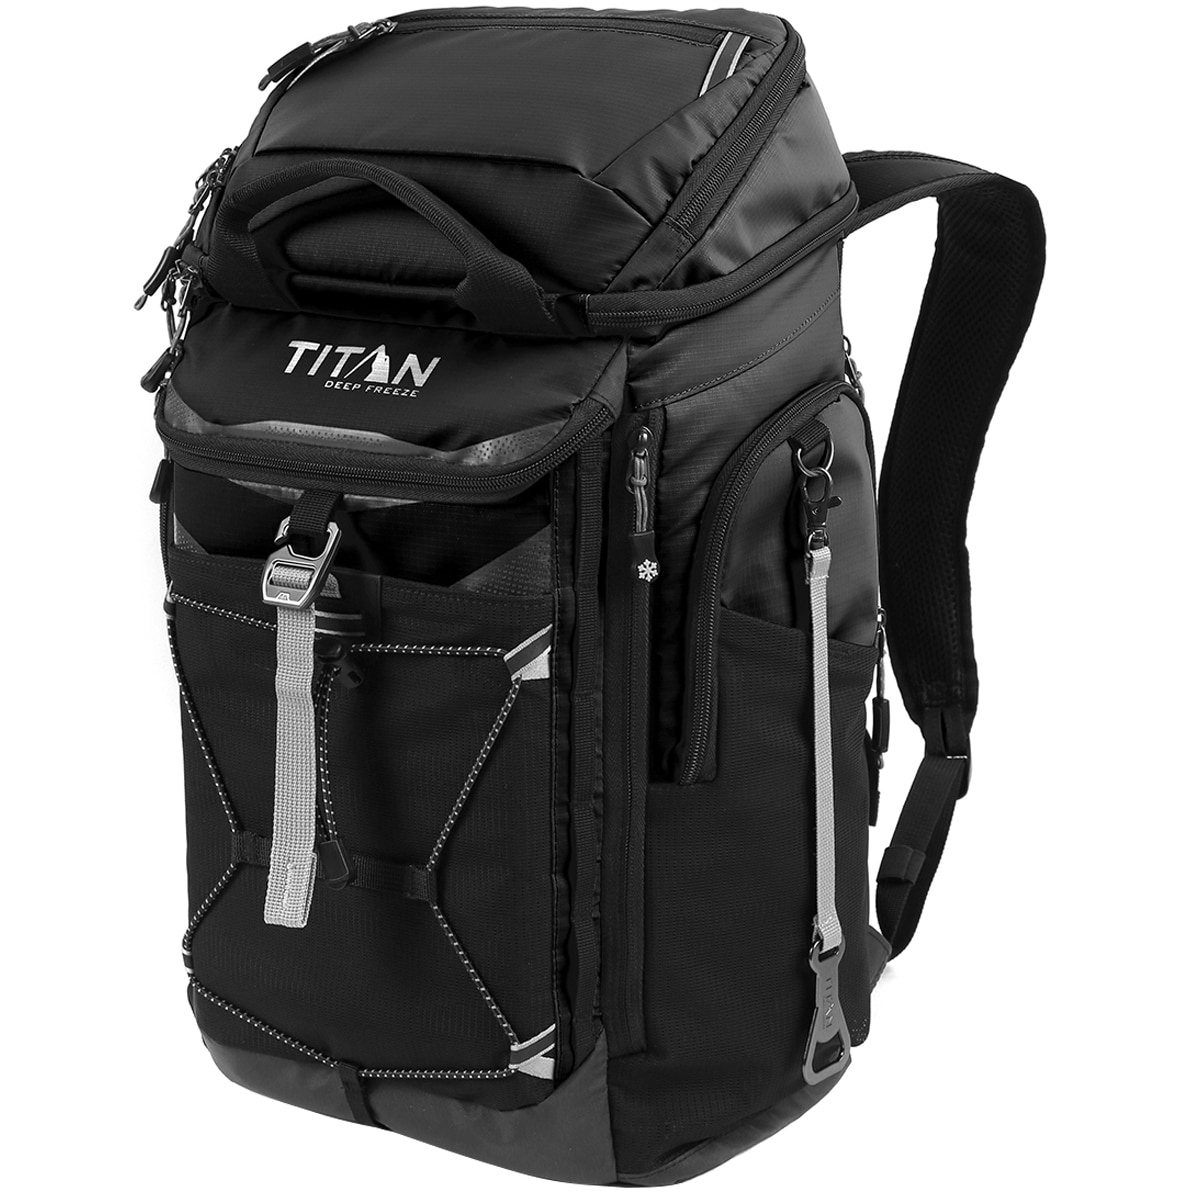 Titan 26 Can Backpack Cooler - Black